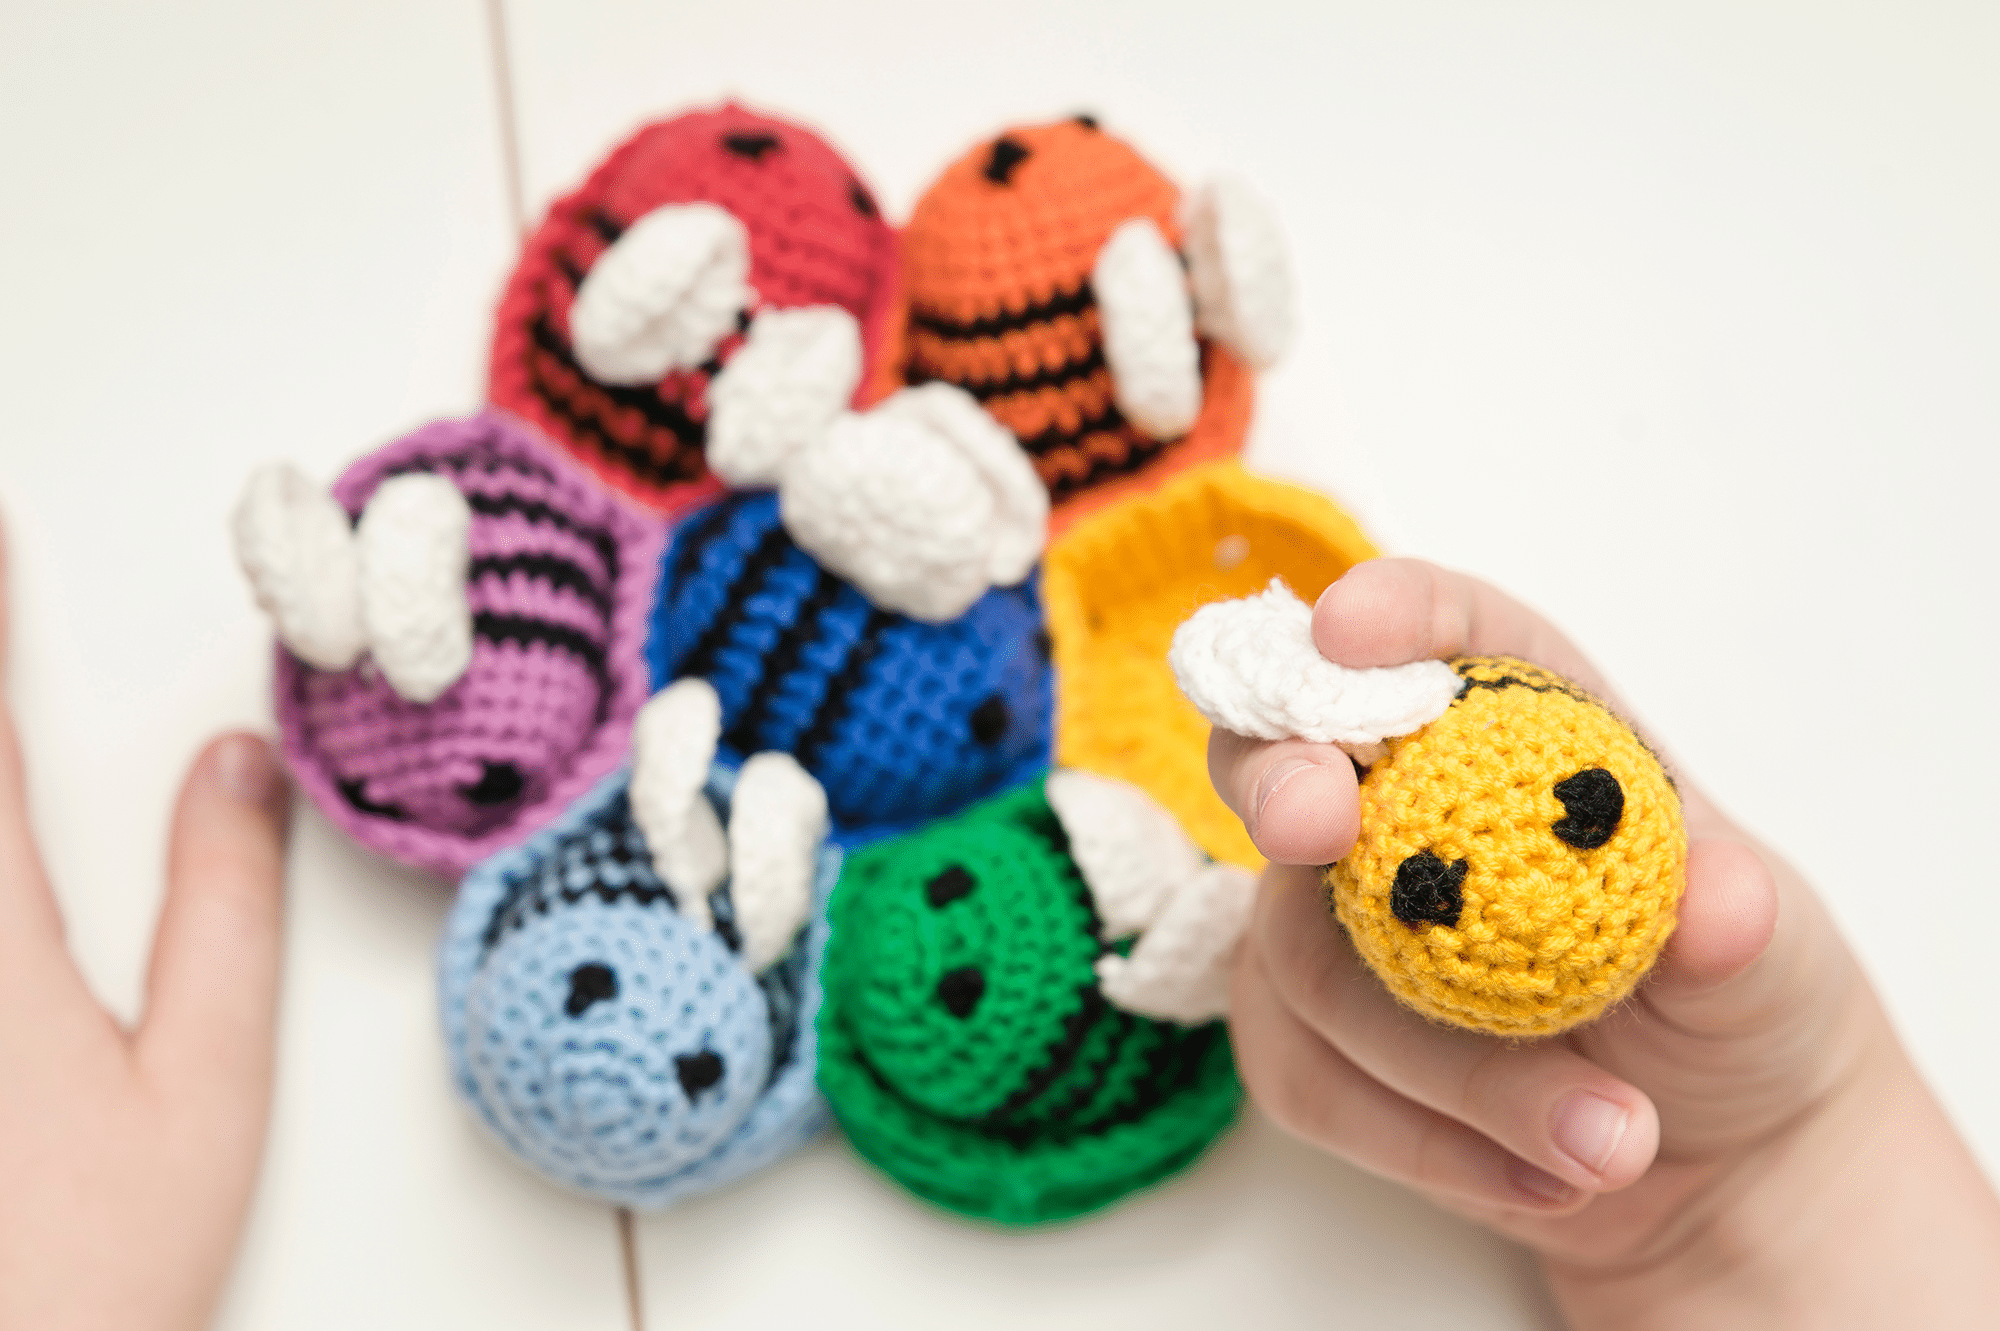 amigurumi bee amigurumi,crochet animals,knitting or crochet art,animals crochet